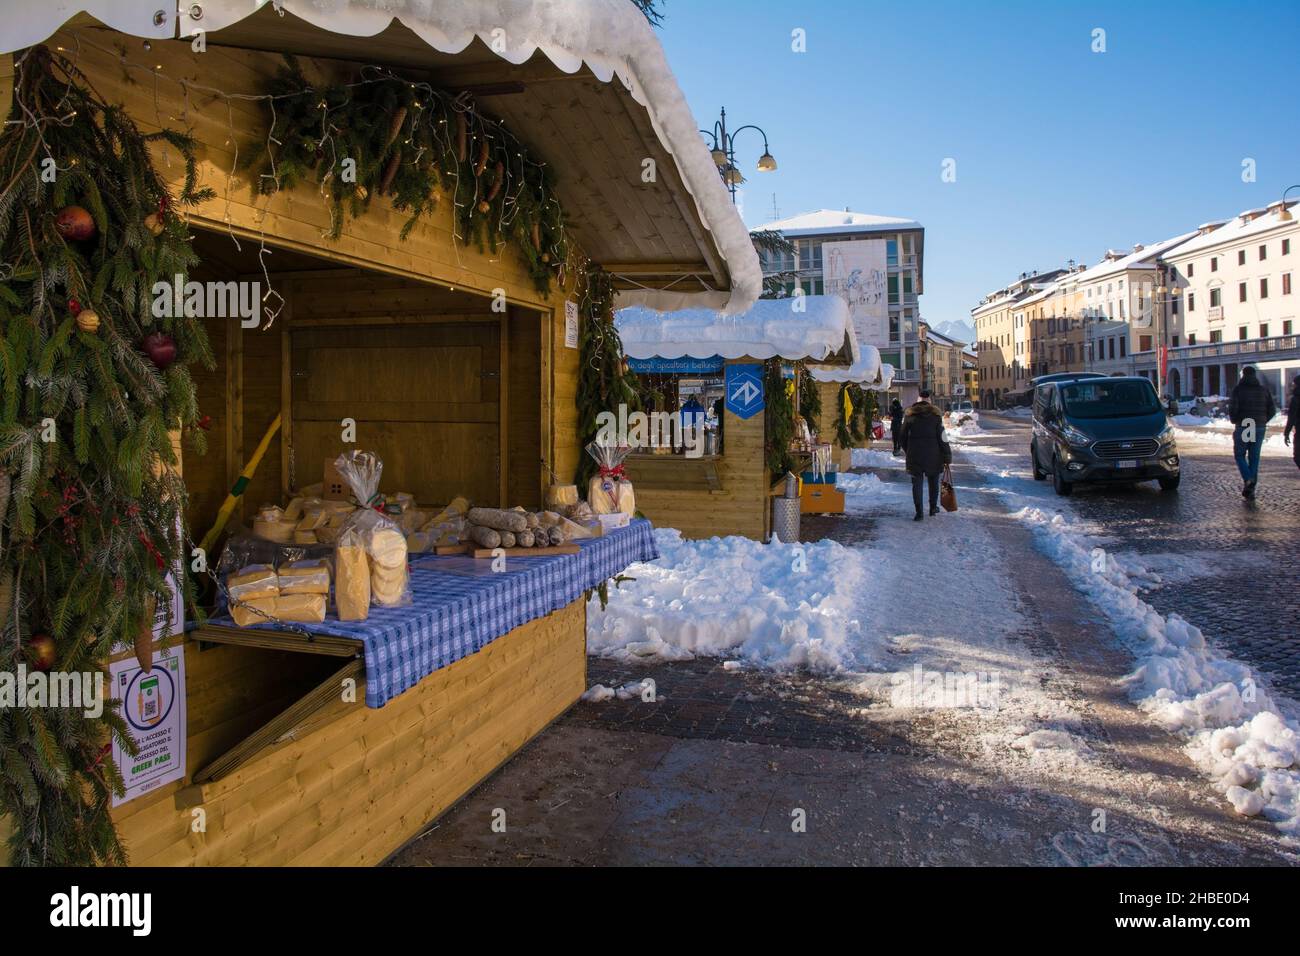 Belluno, Italia - Dicembre 11th 2021. Bancarelle tradizionali del mercatino di Natale in Piazza dei Martiri nel centro storico durante la pandemia del Covid-19. Foto Stock